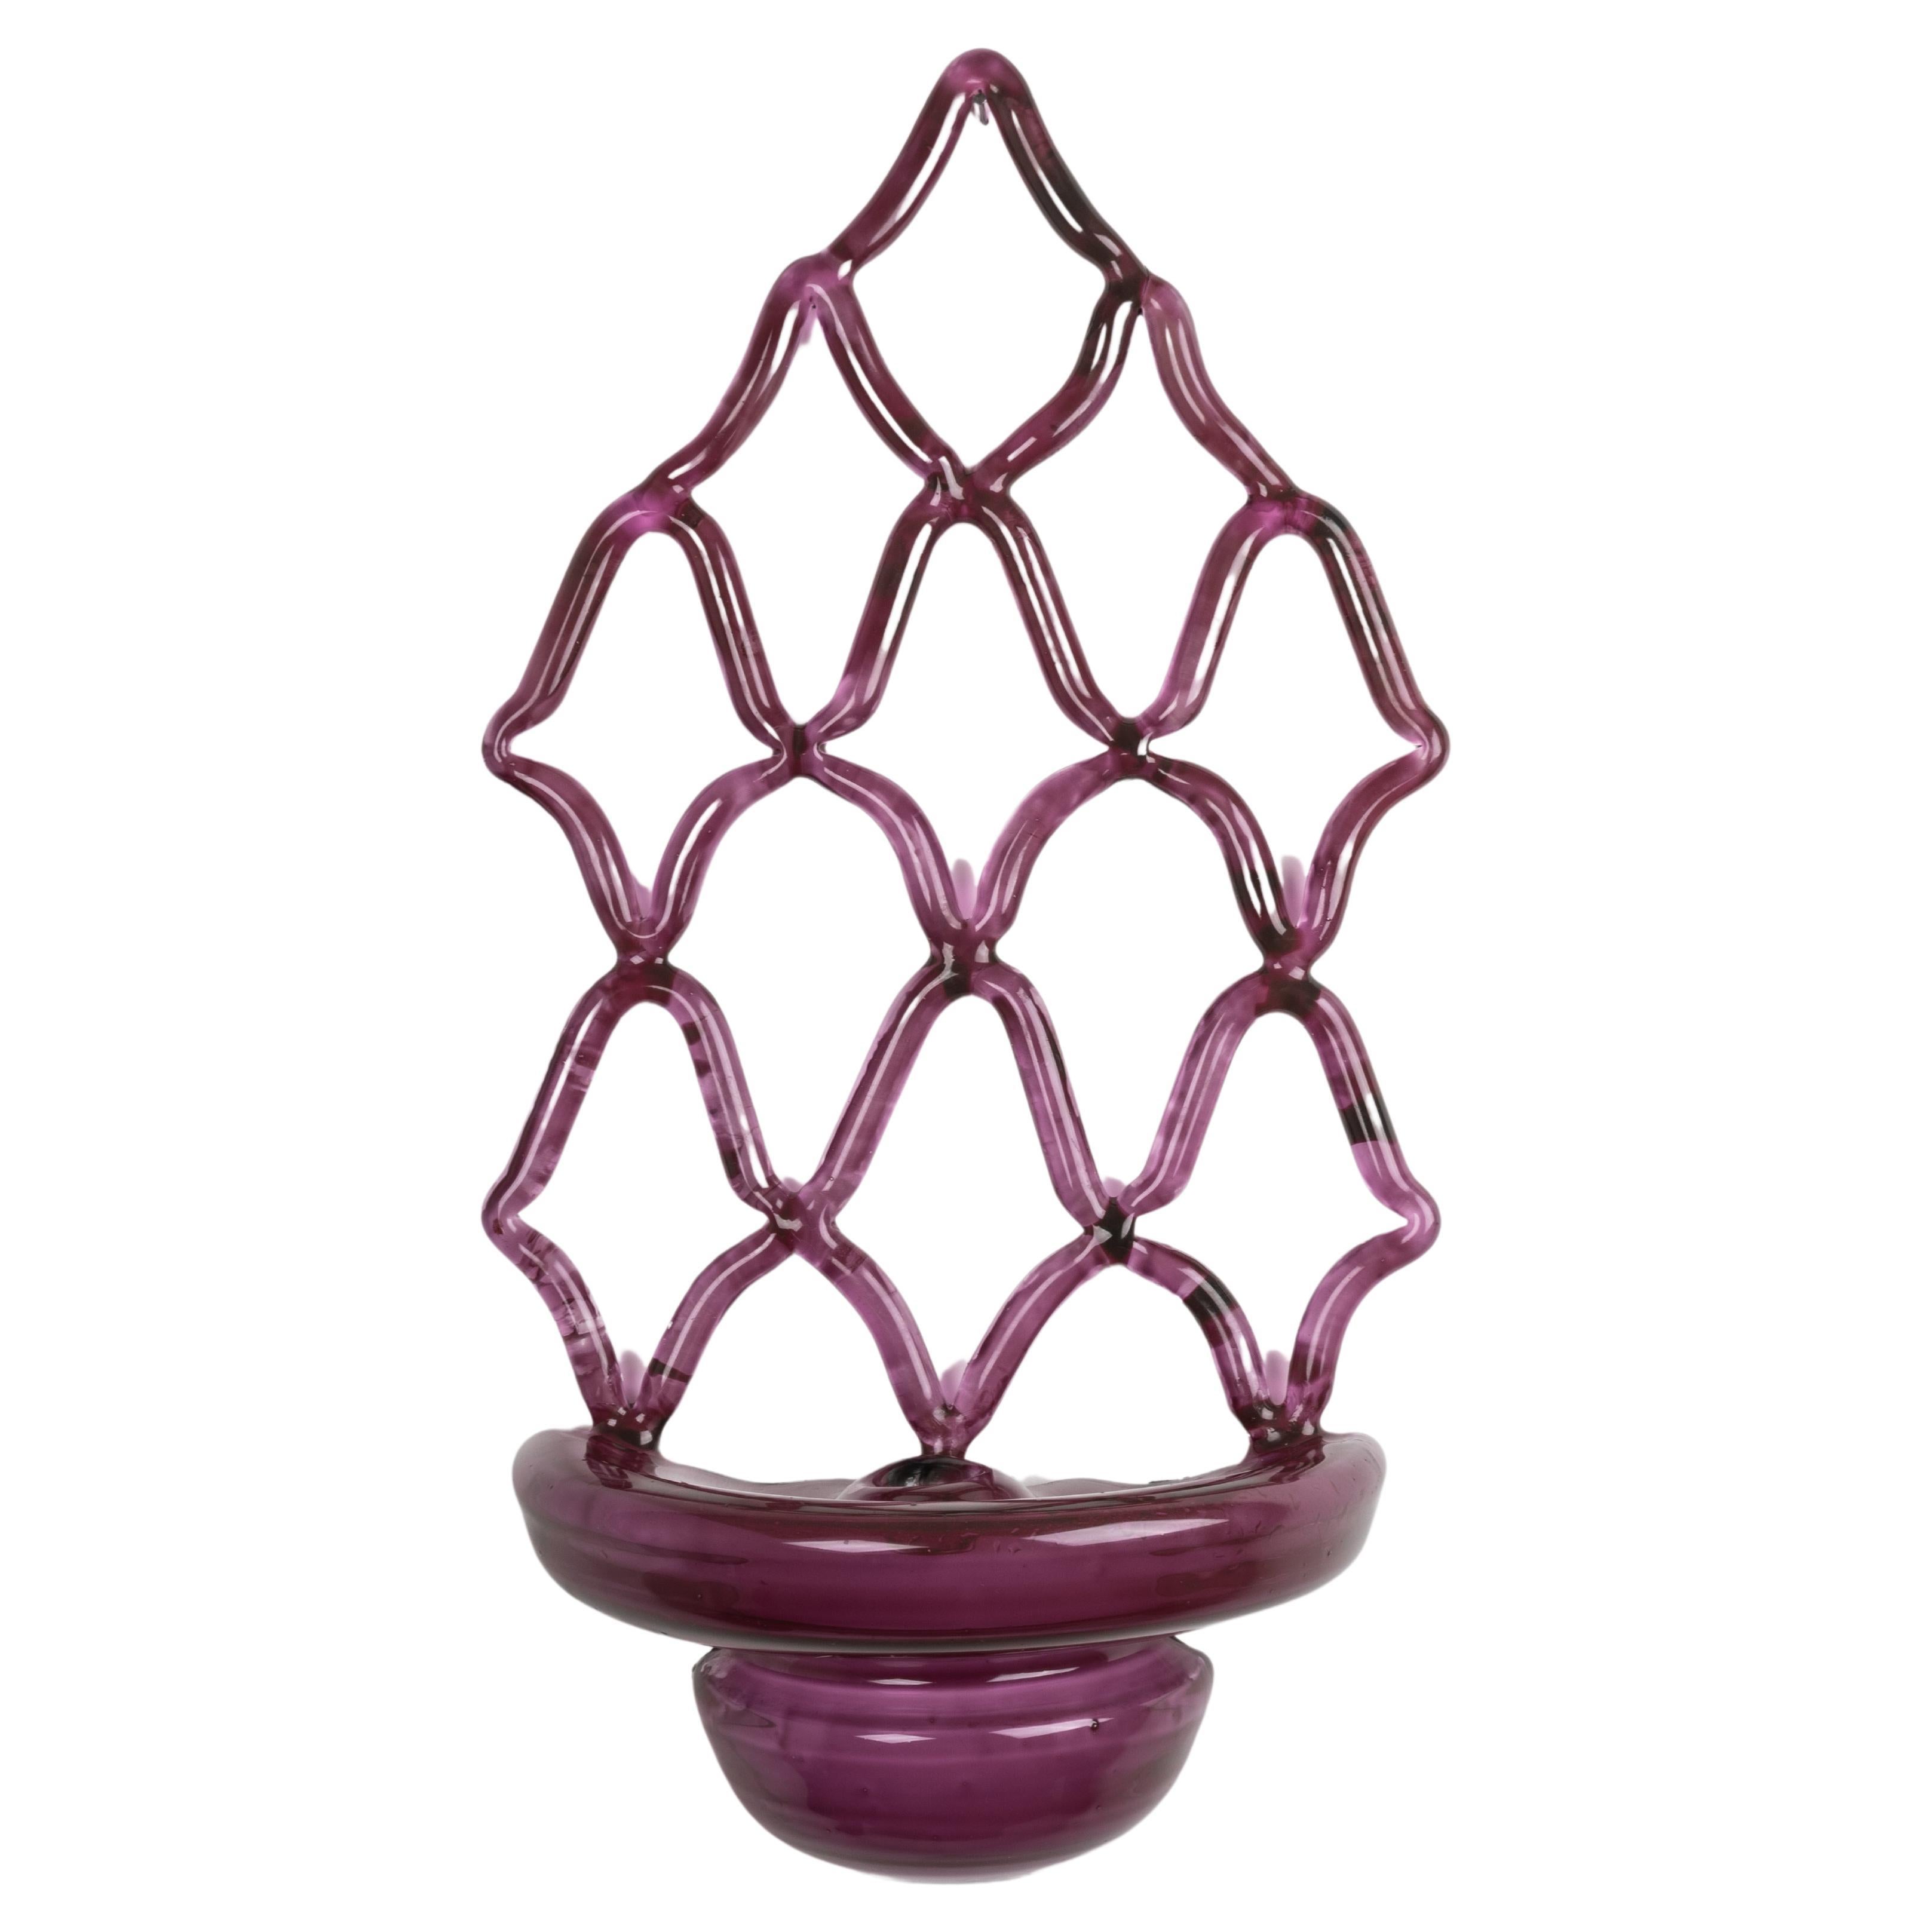 Violet candlestick For Sale